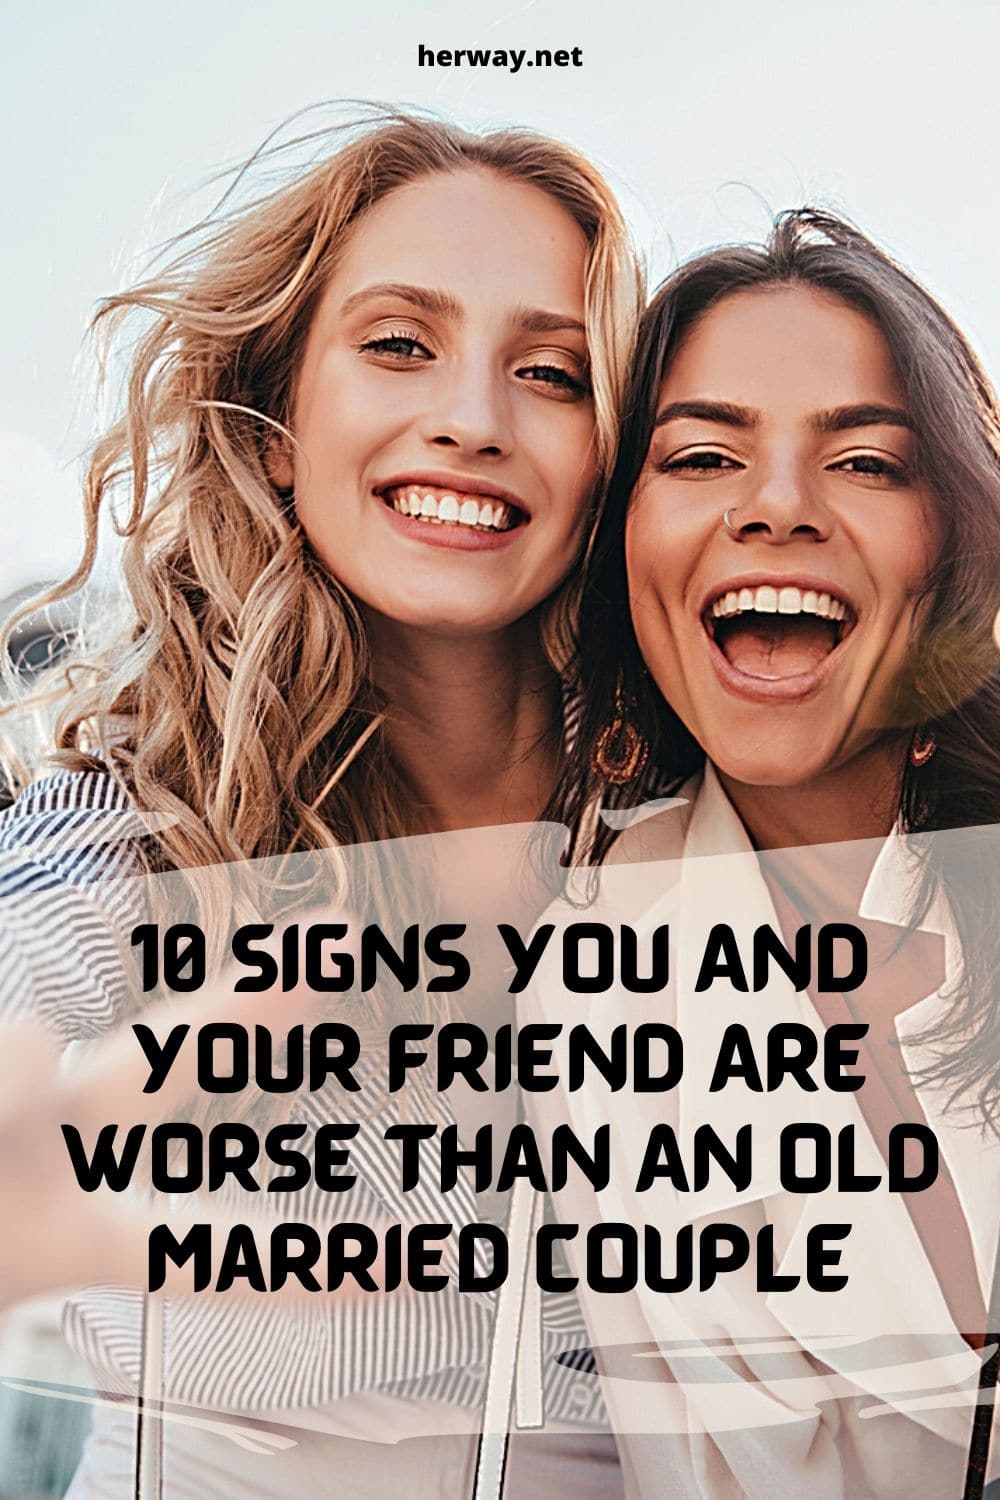 10 segni che tu e il tuo amico siete peggio di una vecchia coppia sposata